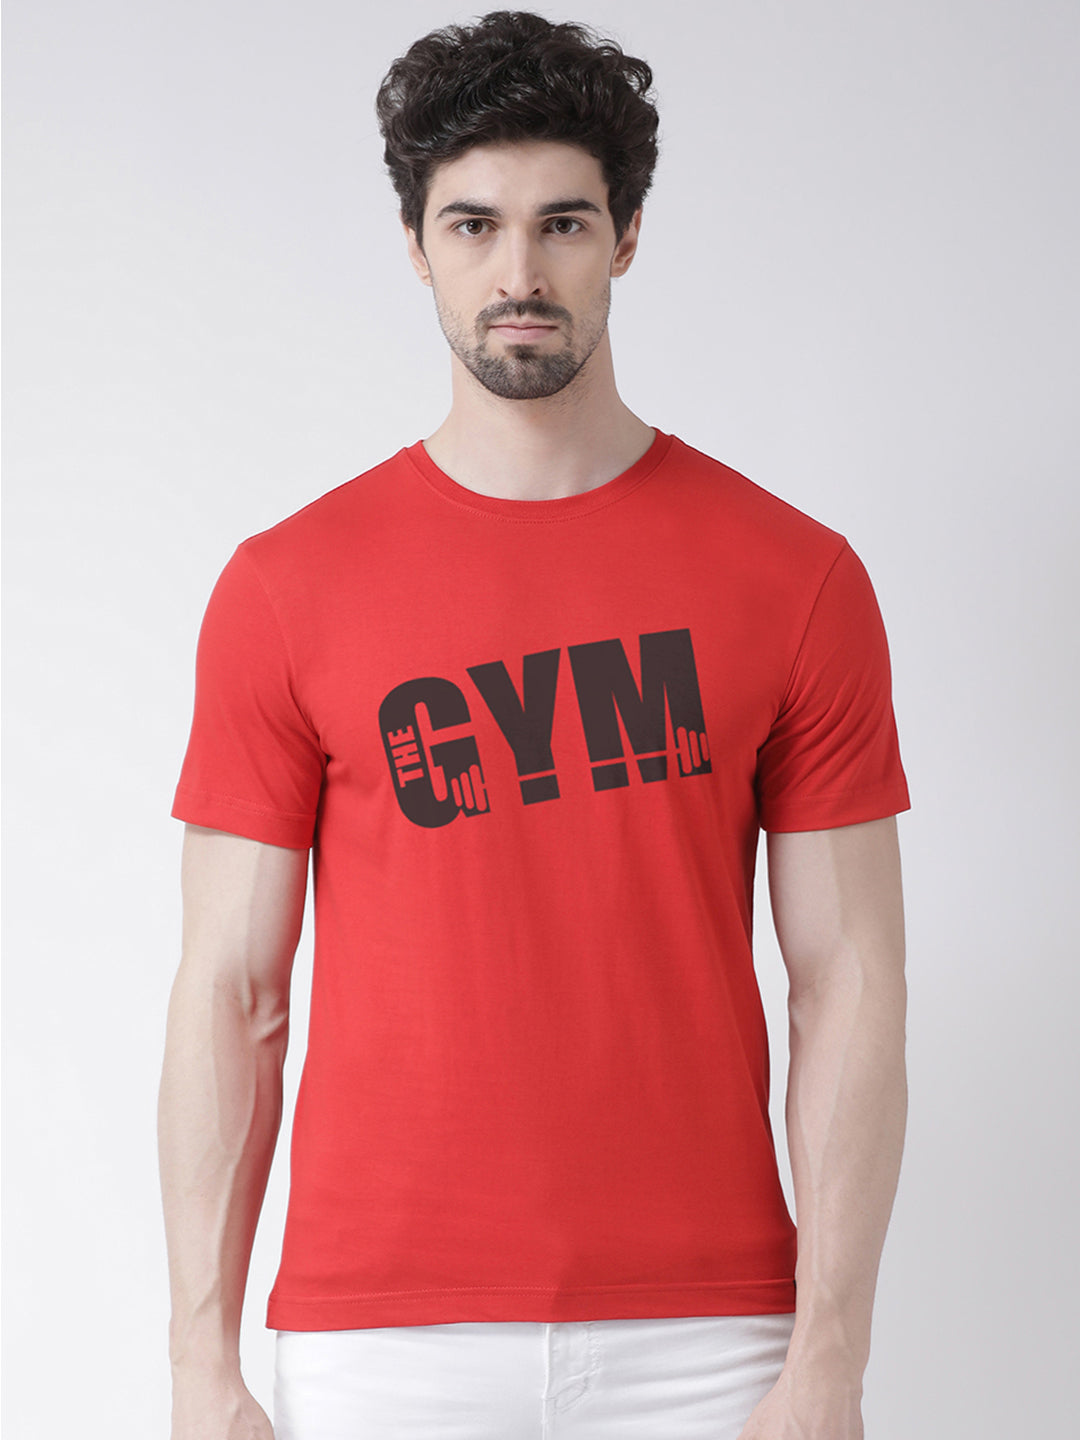 Men's Pack Of 2 Black & Red Printed Half Sleeves T-Shirt - Friskers